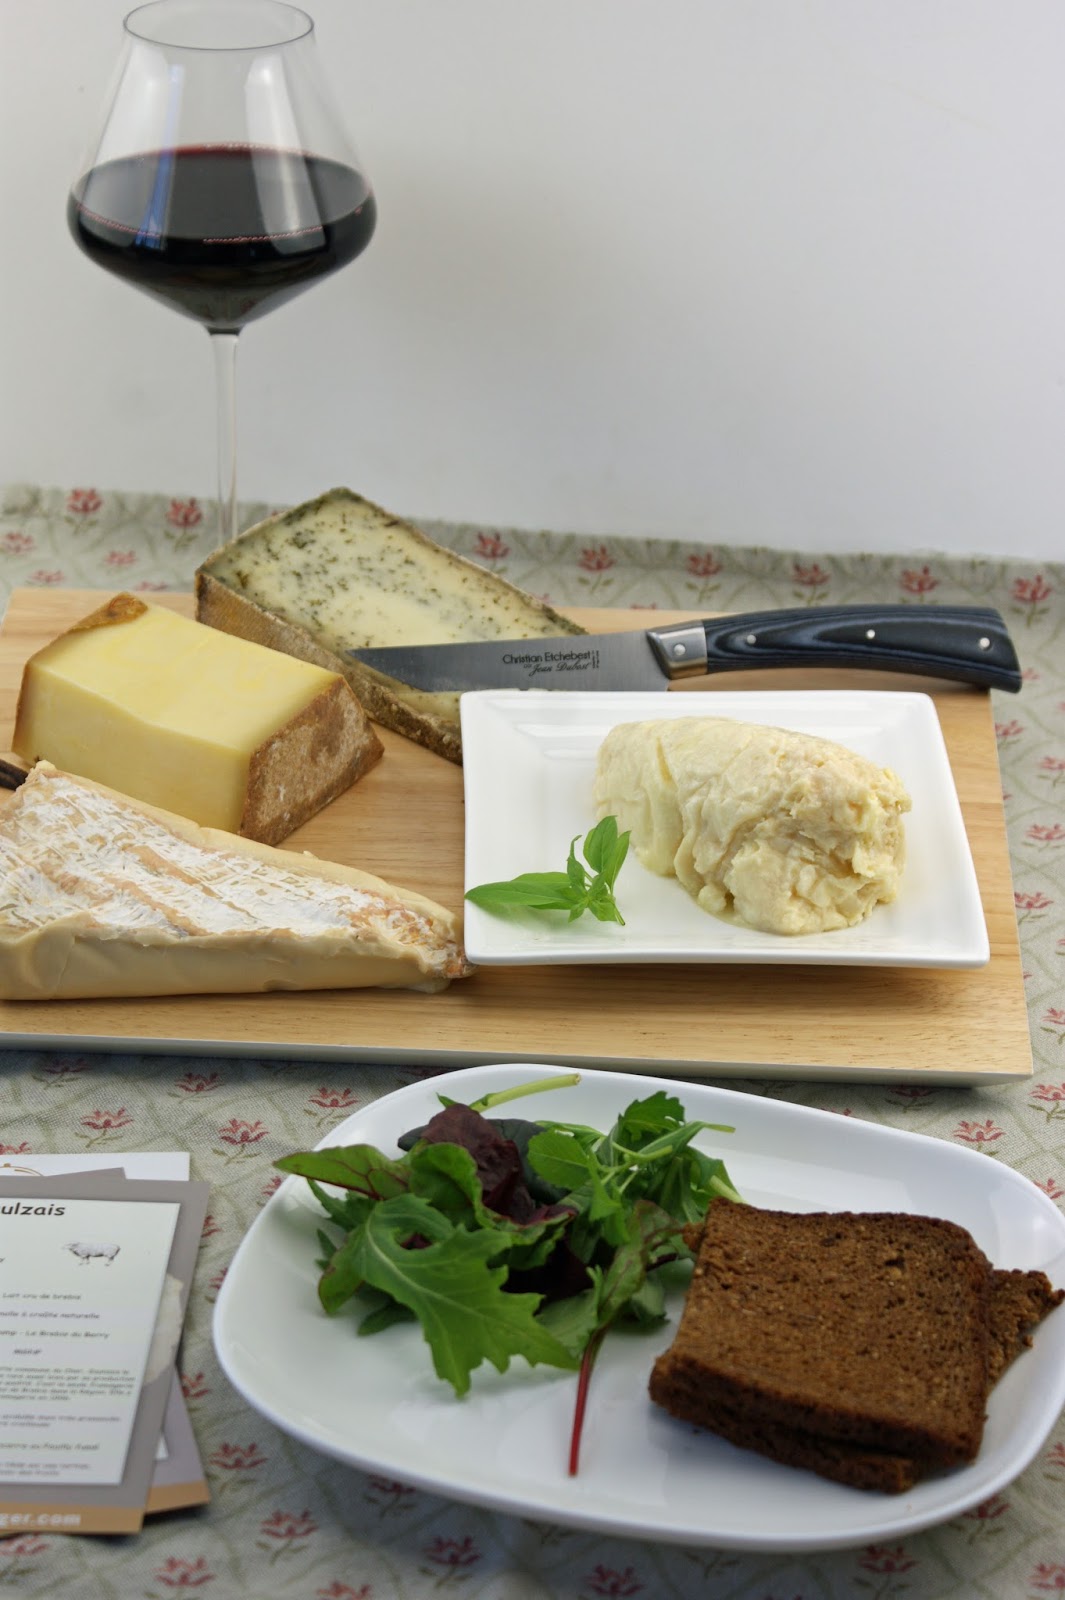 Où trouver le meilleur fromage de Bordeaux ?